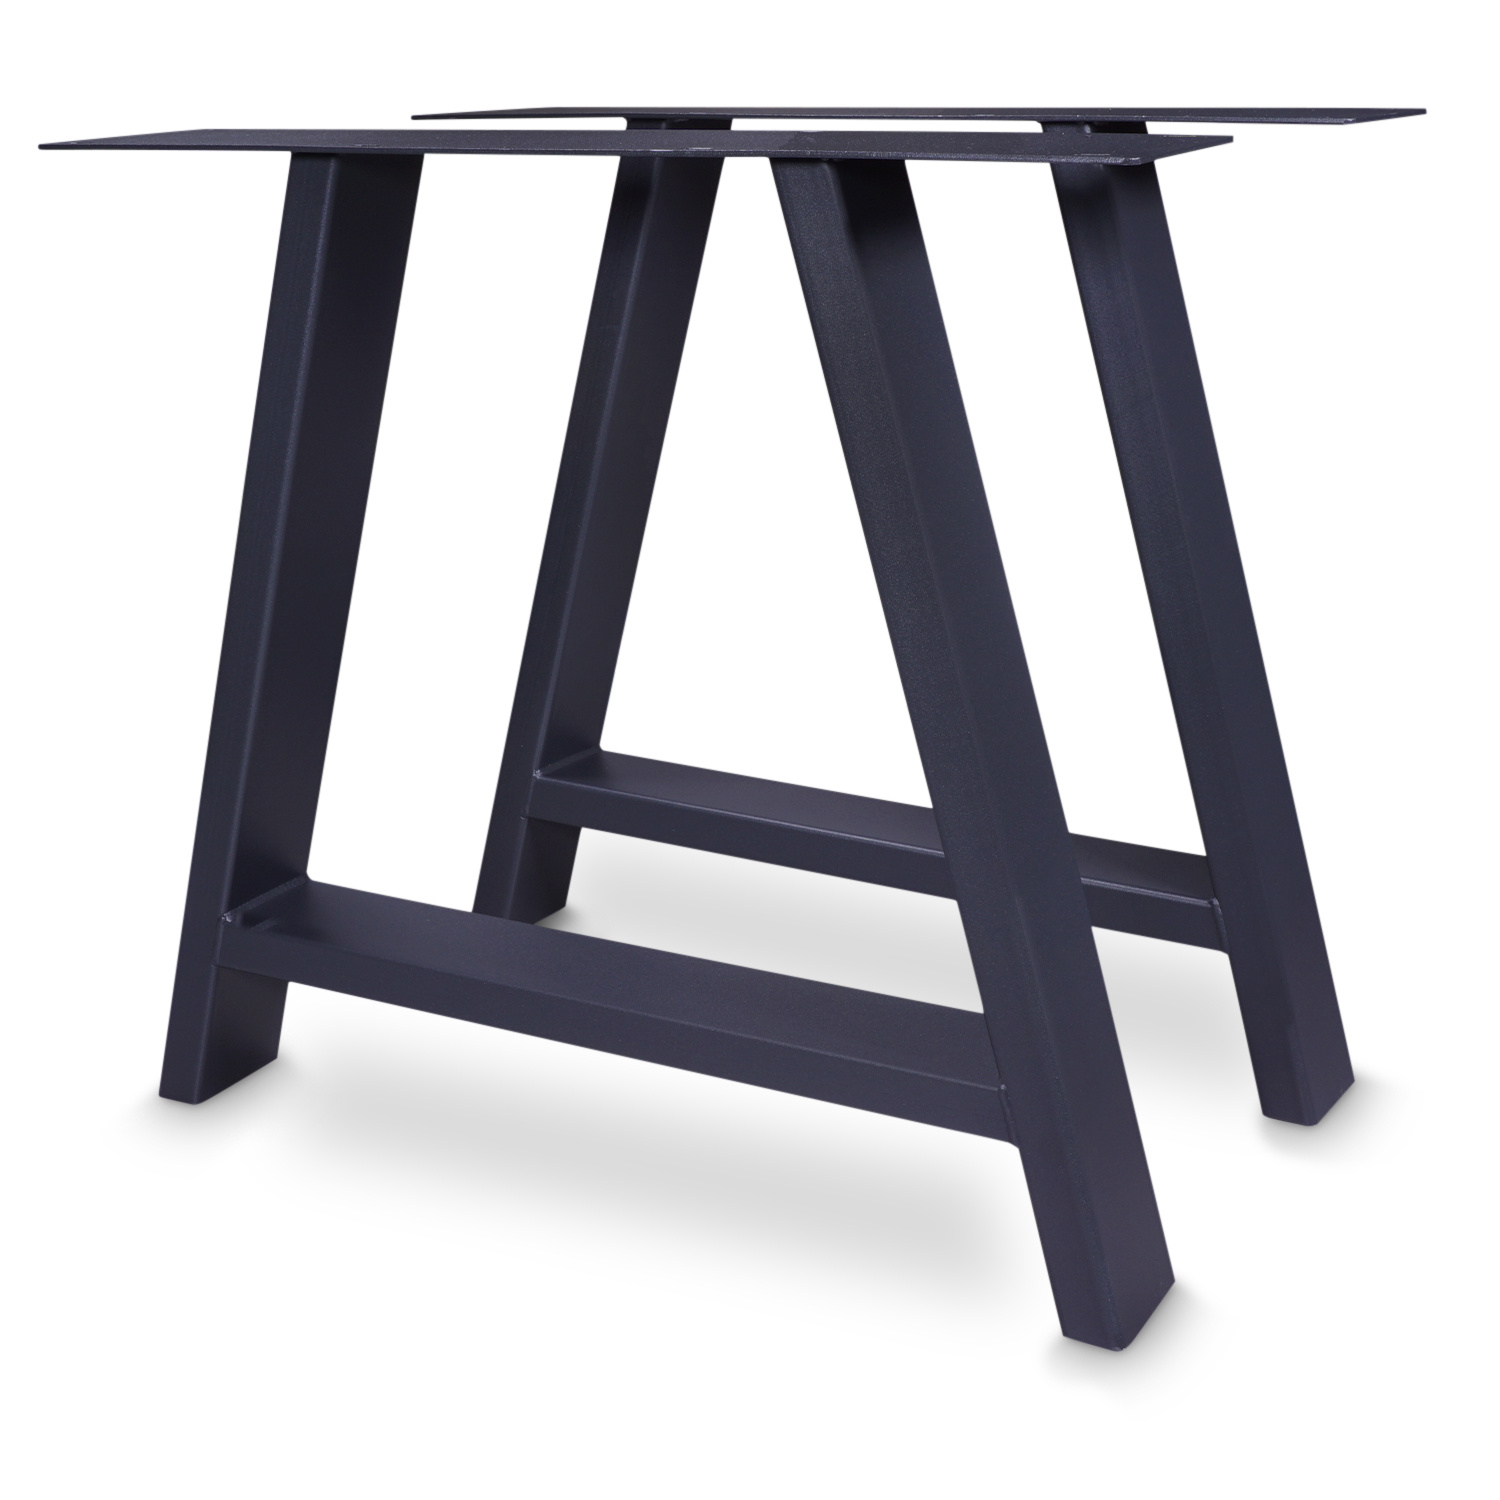  Tischbeine A Metall elegant SET (2 Stück) - 10x4 cm - 78 cm breit - 72 cm hoch - A-form Tischkufen / Tischgestell beschichtet - Schwarz